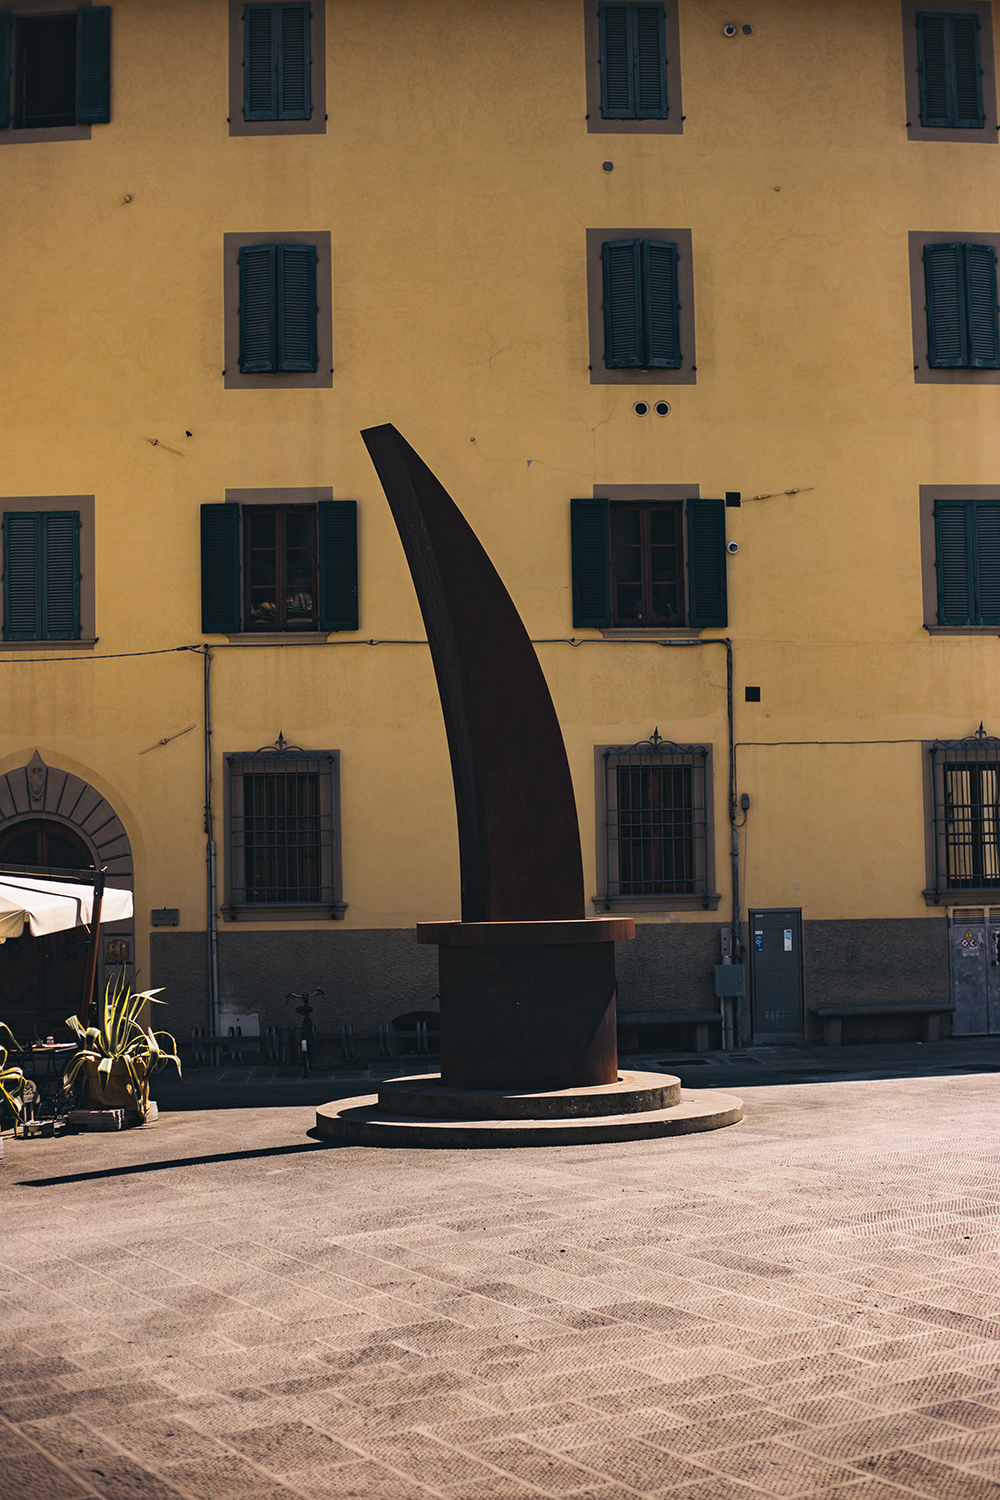 Dal 1999 in Piazza Giovanni XXIII, che un tempo ospitava un pozzo, è collocata l'opera dell'artista pistoiese Gianni Ruffi: "La luna nel Pozzo".